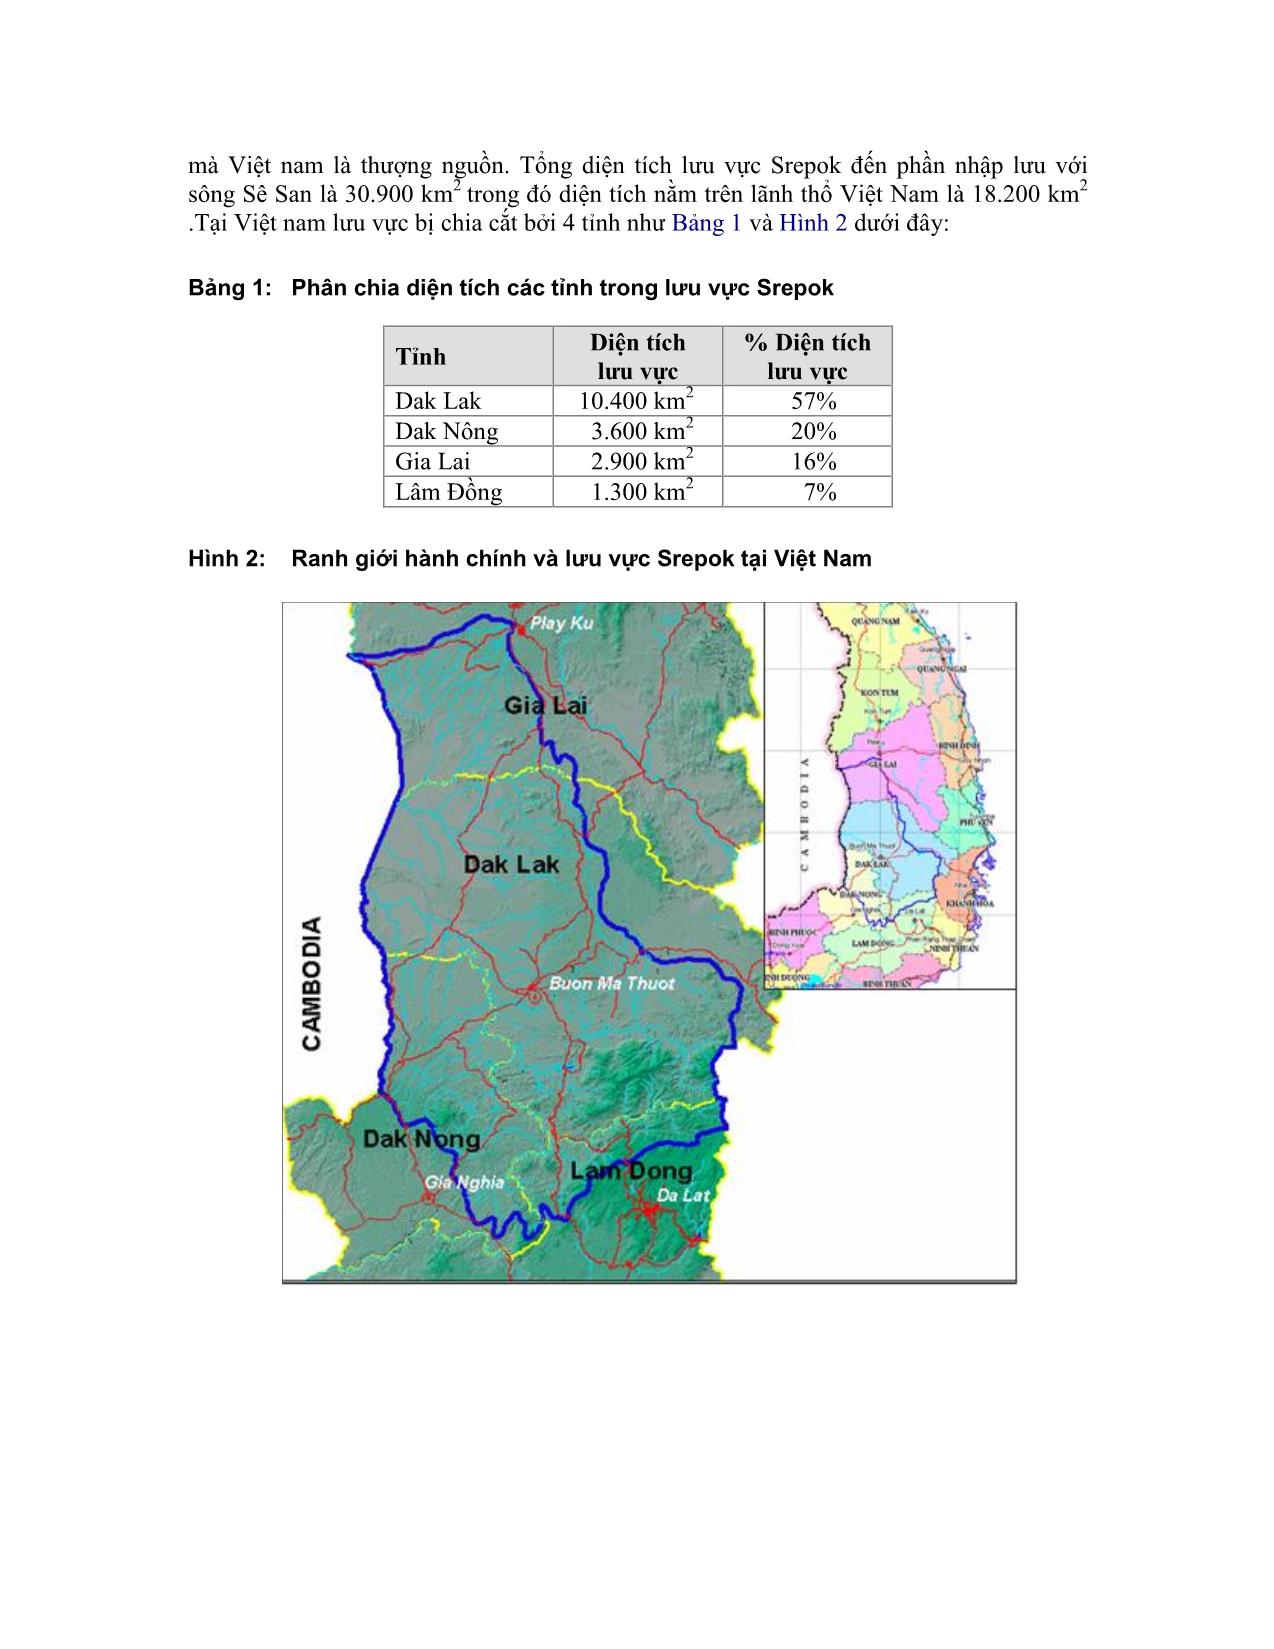 Các vấn đề ưu tiên đối với quản lý tài nguyên nước tại lưu vực Srêpôk trang 2